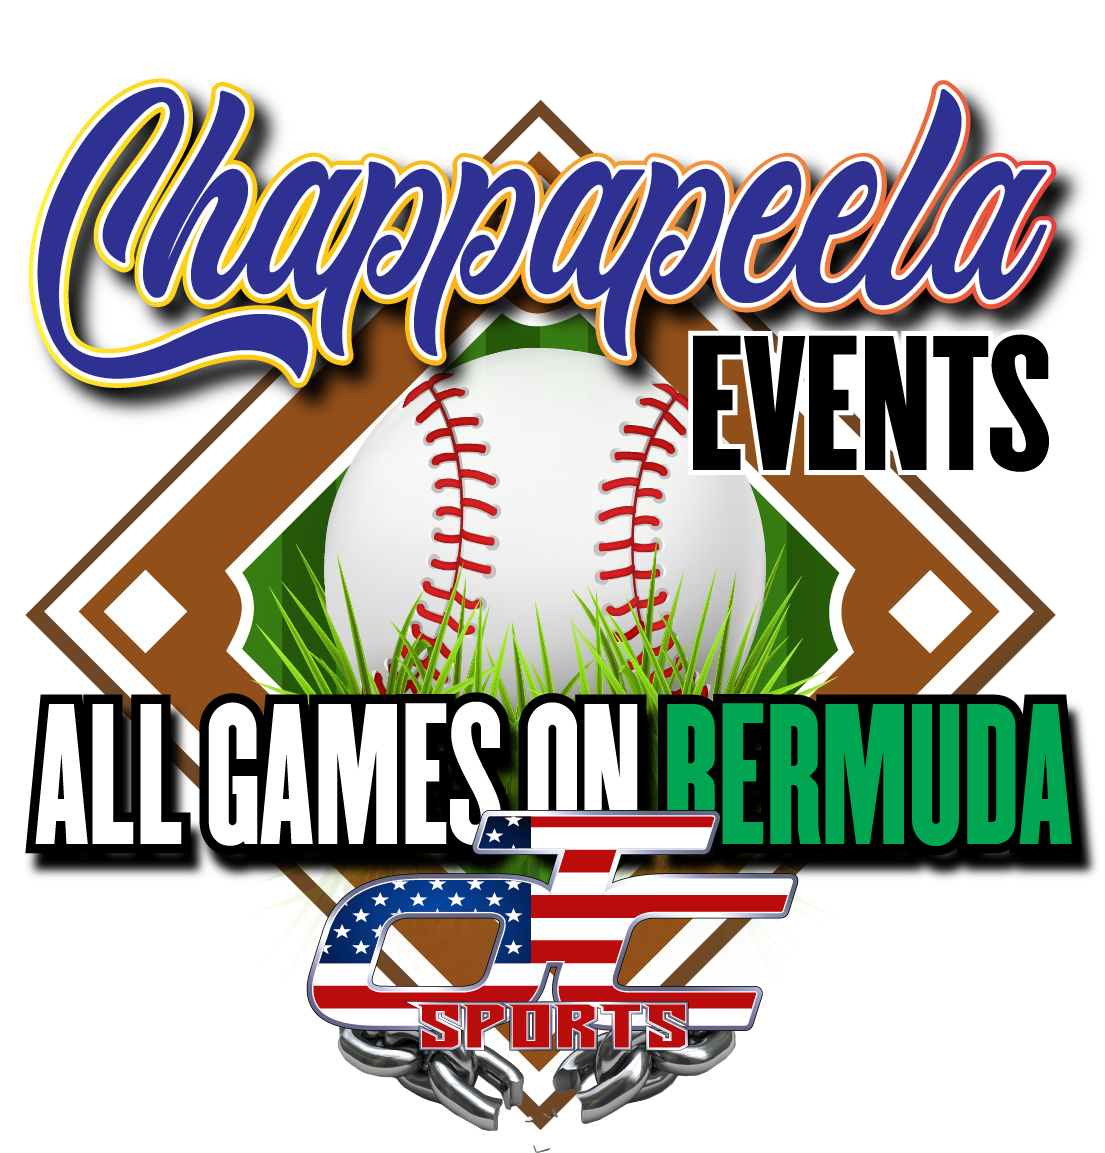 Chappapela Bermuda Event! Logo